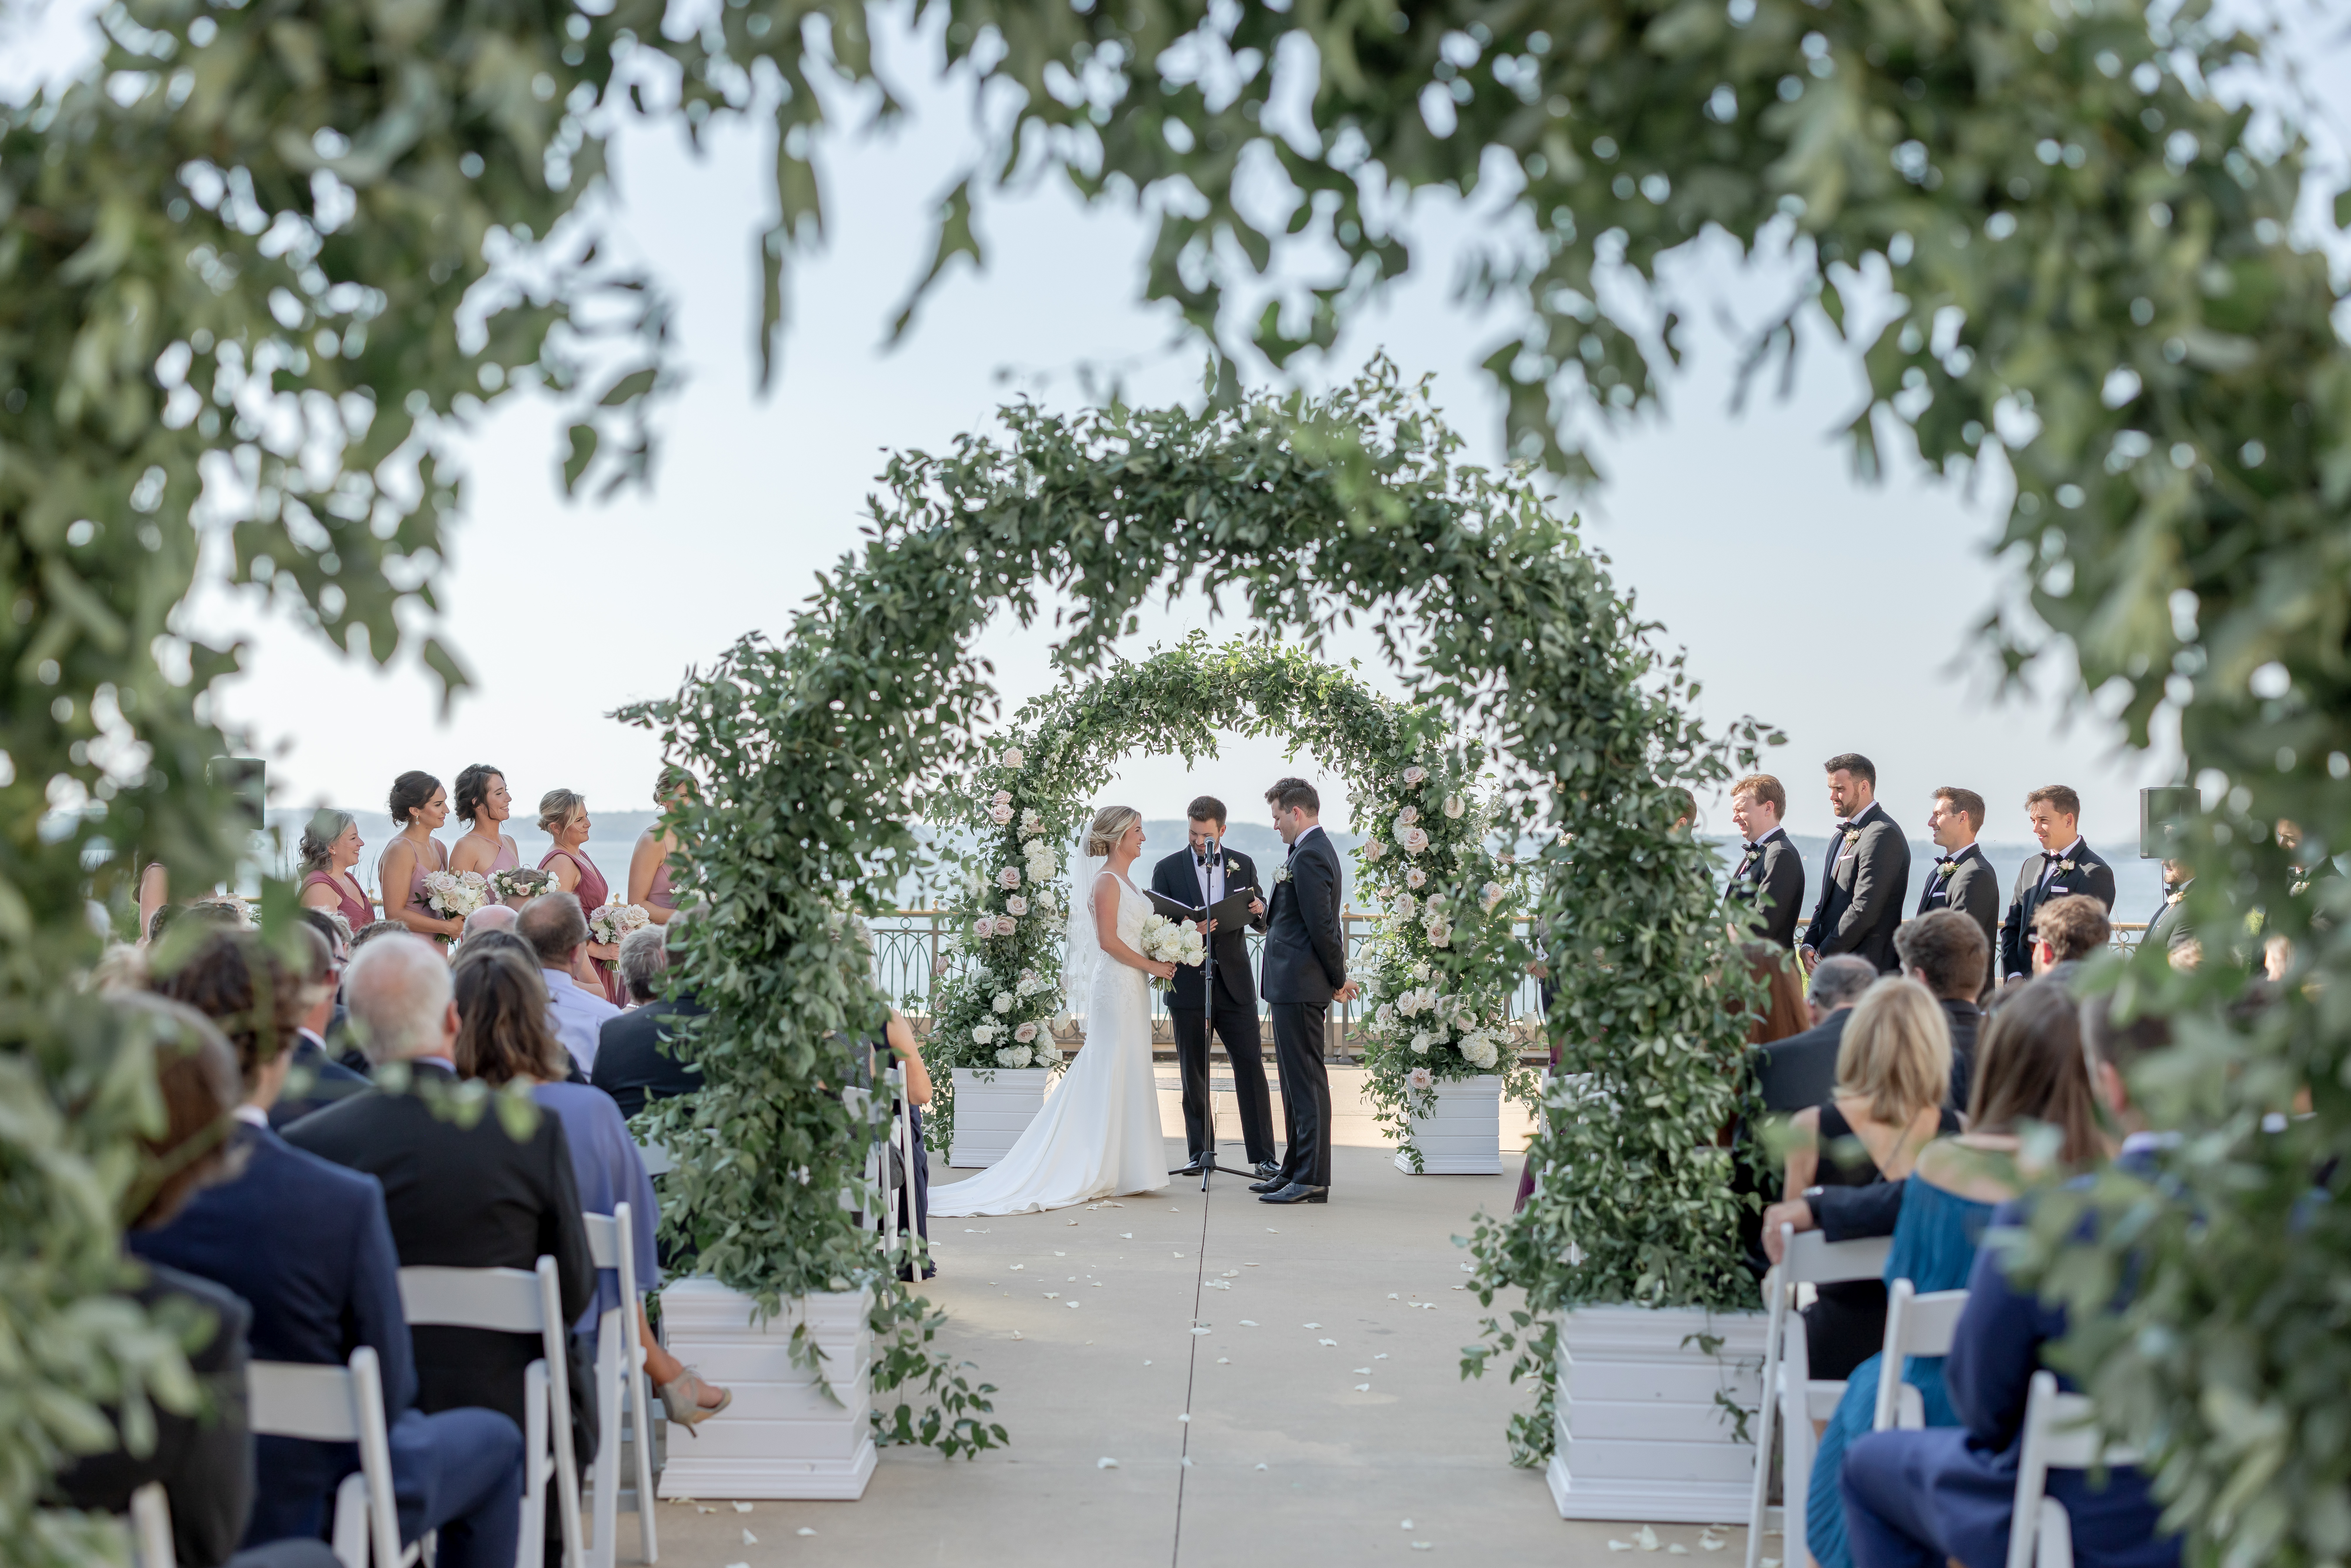 wedding-aisle-flower-arches-photos